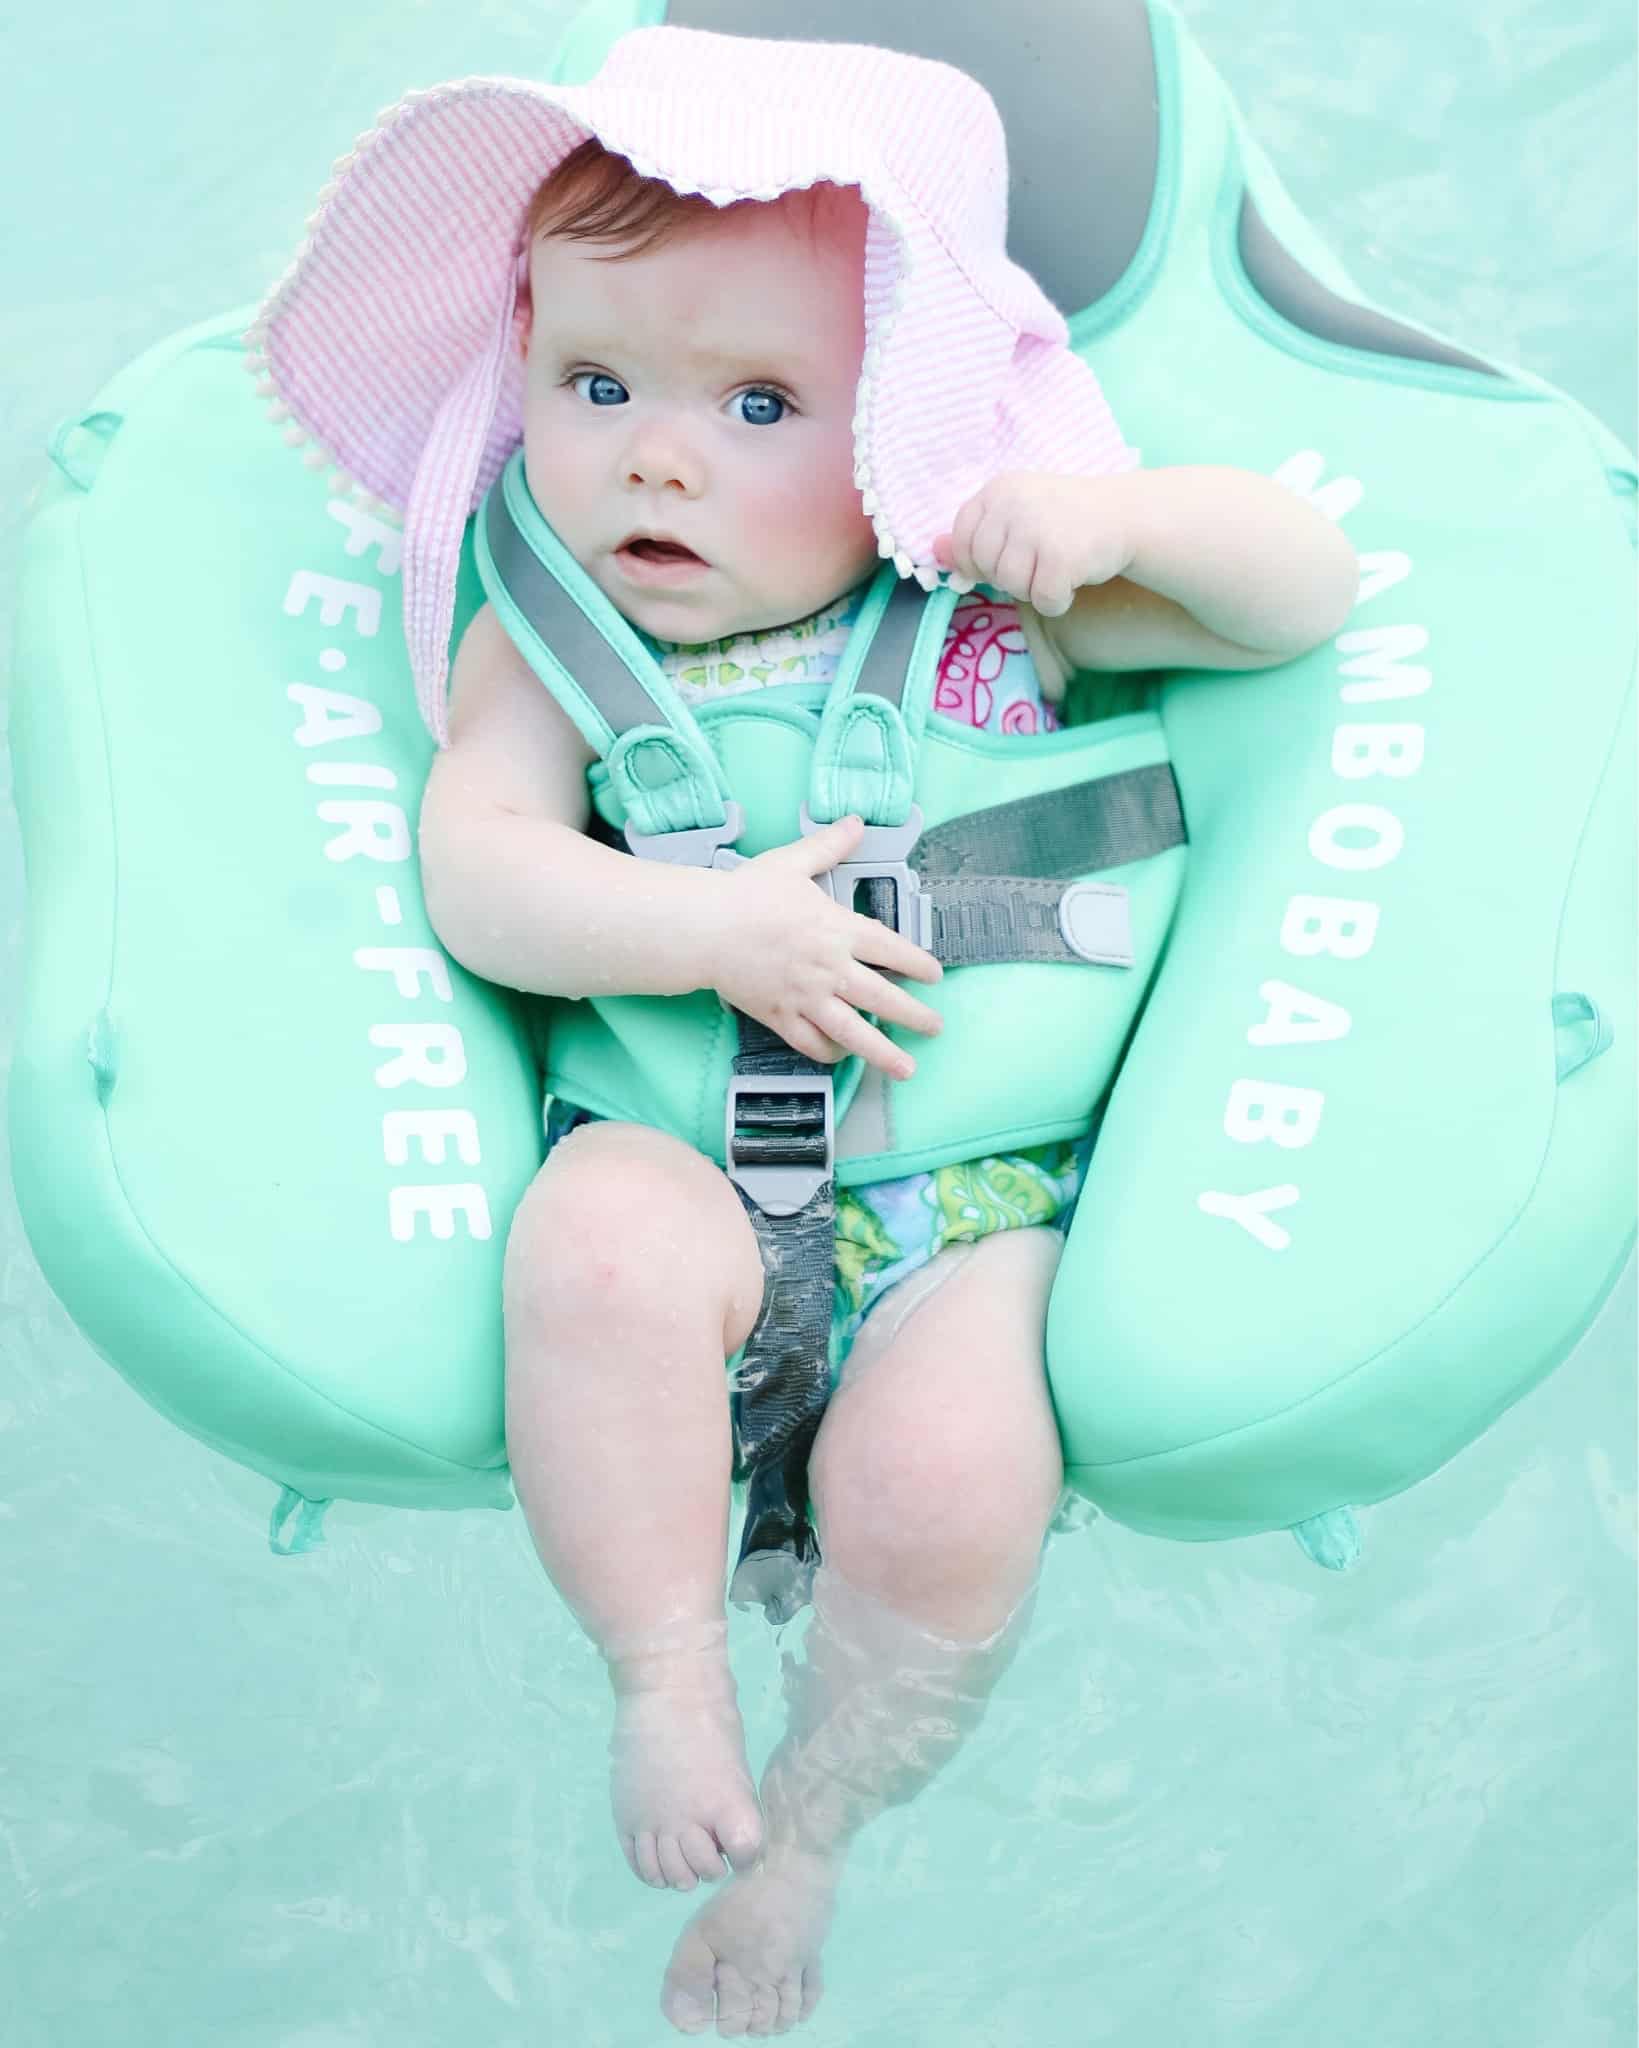 baby girl in pool float